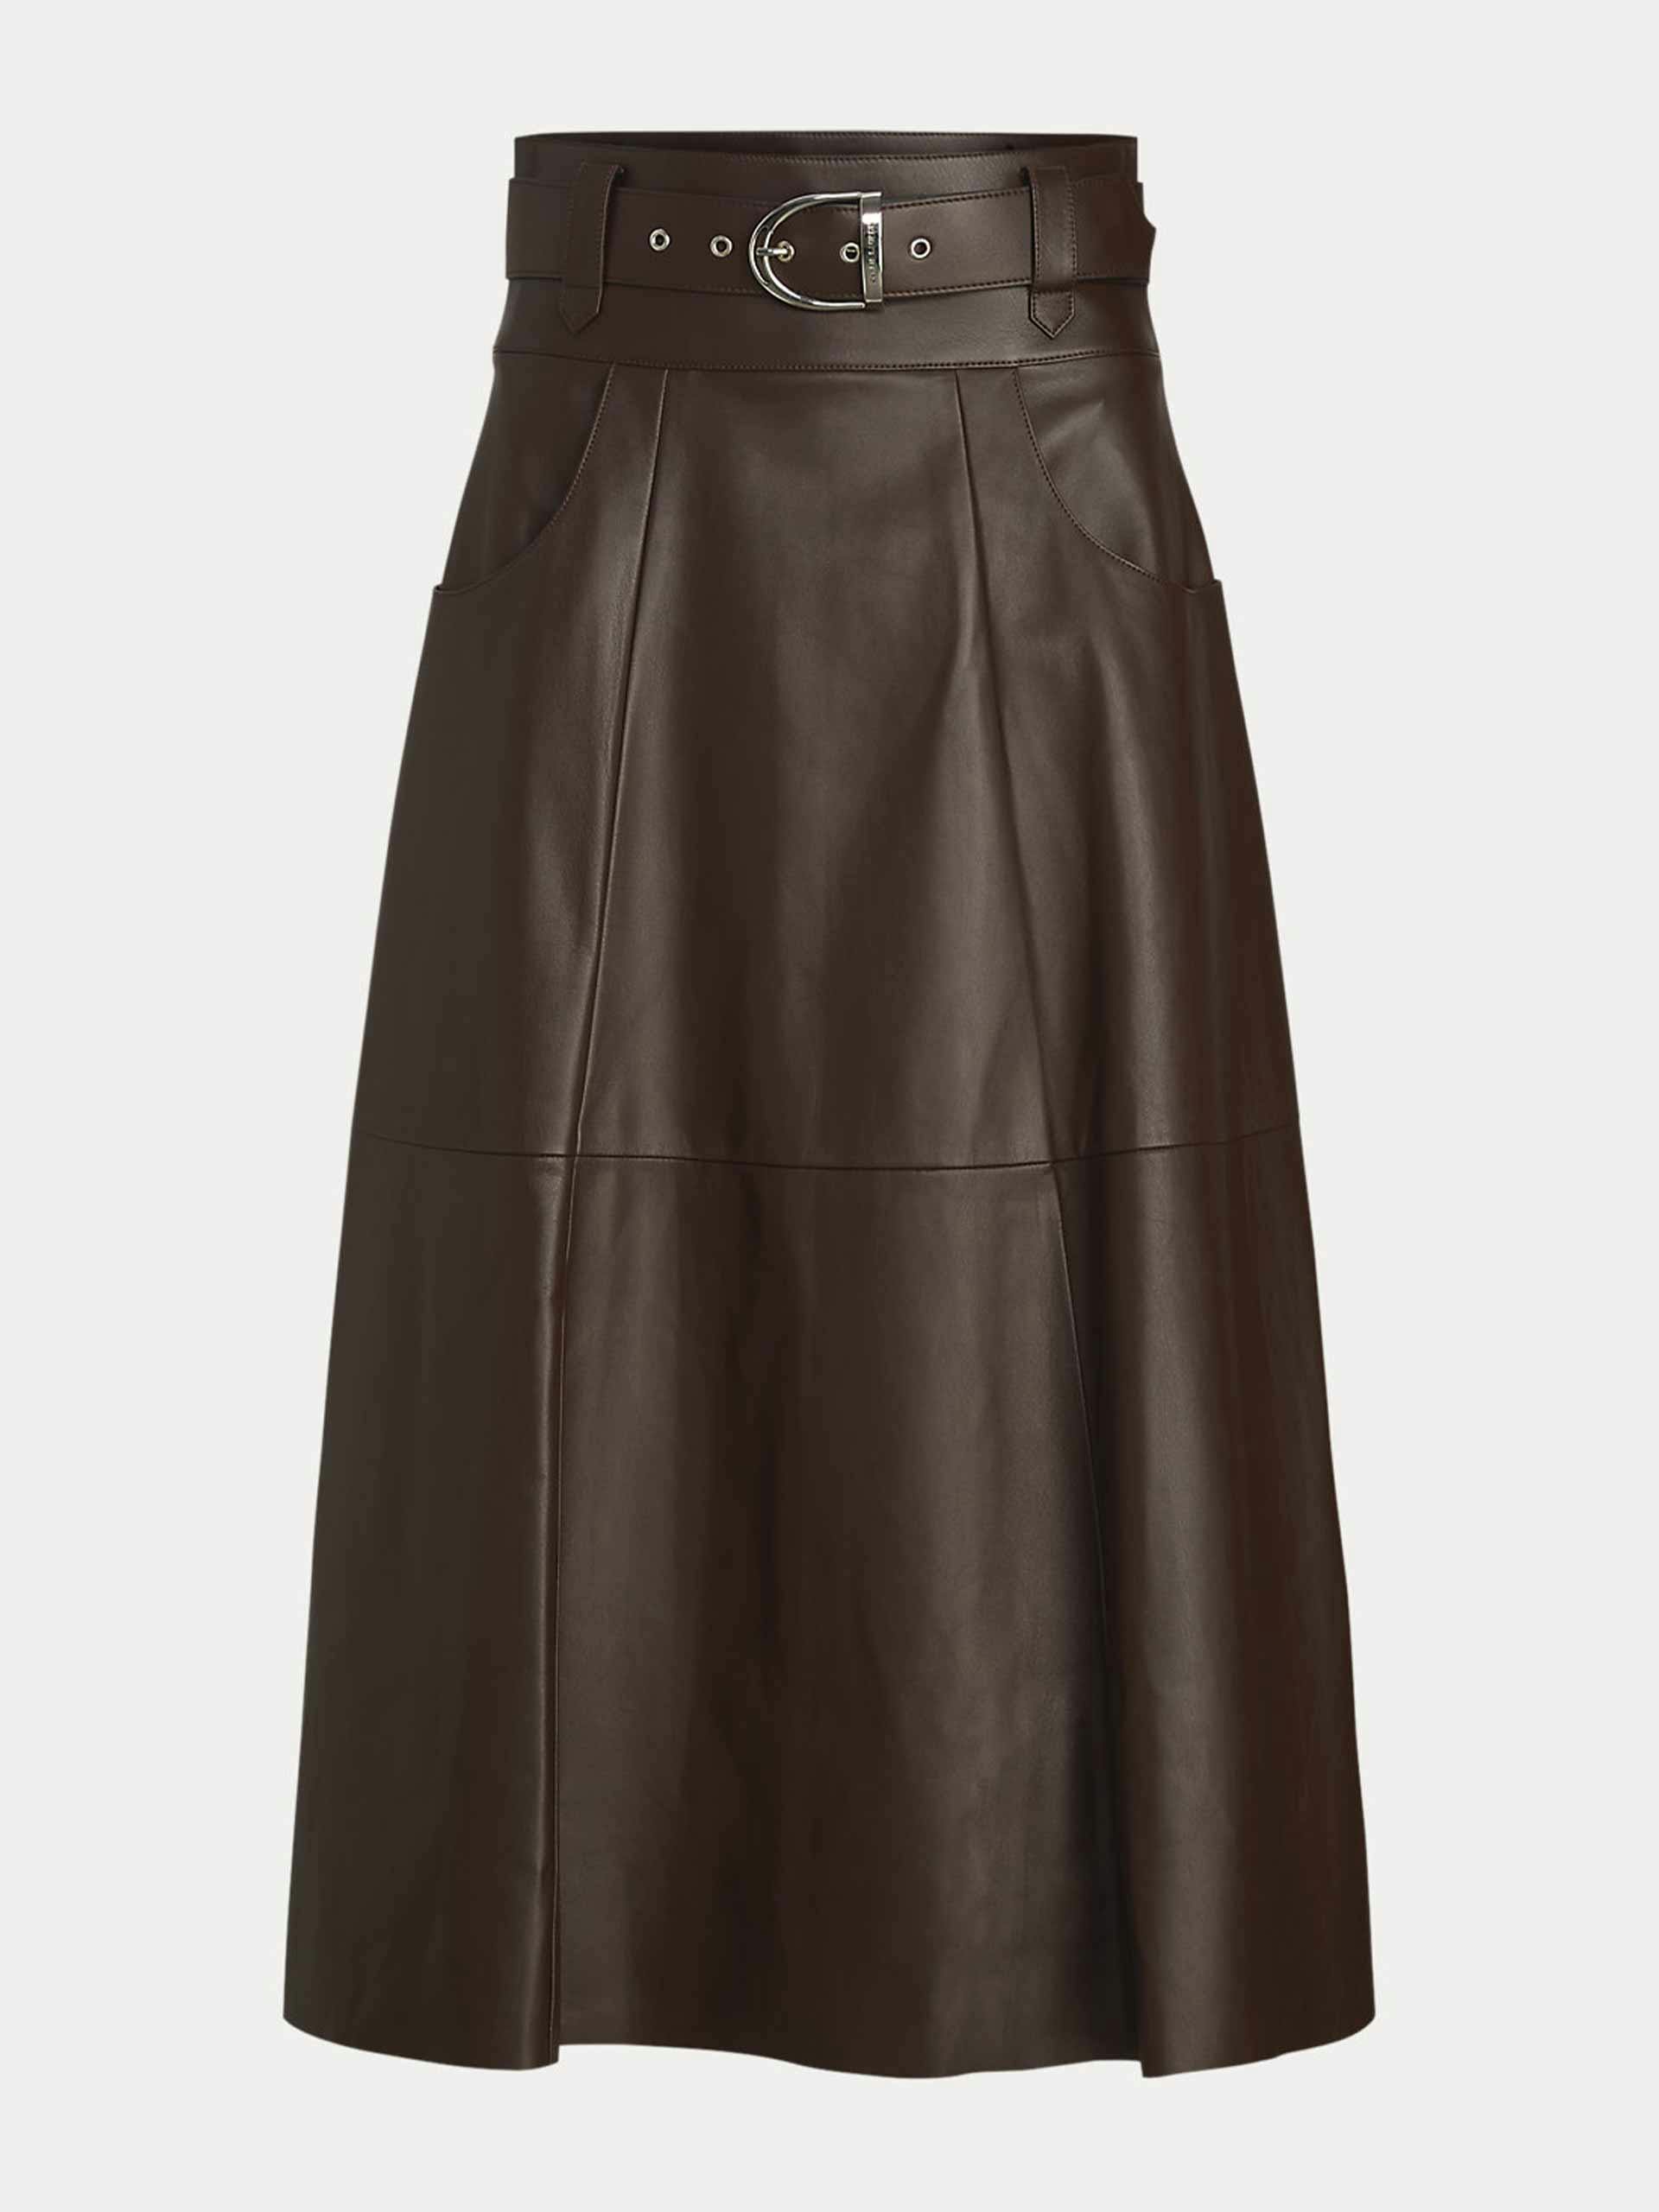 Lambskin A-line skirt